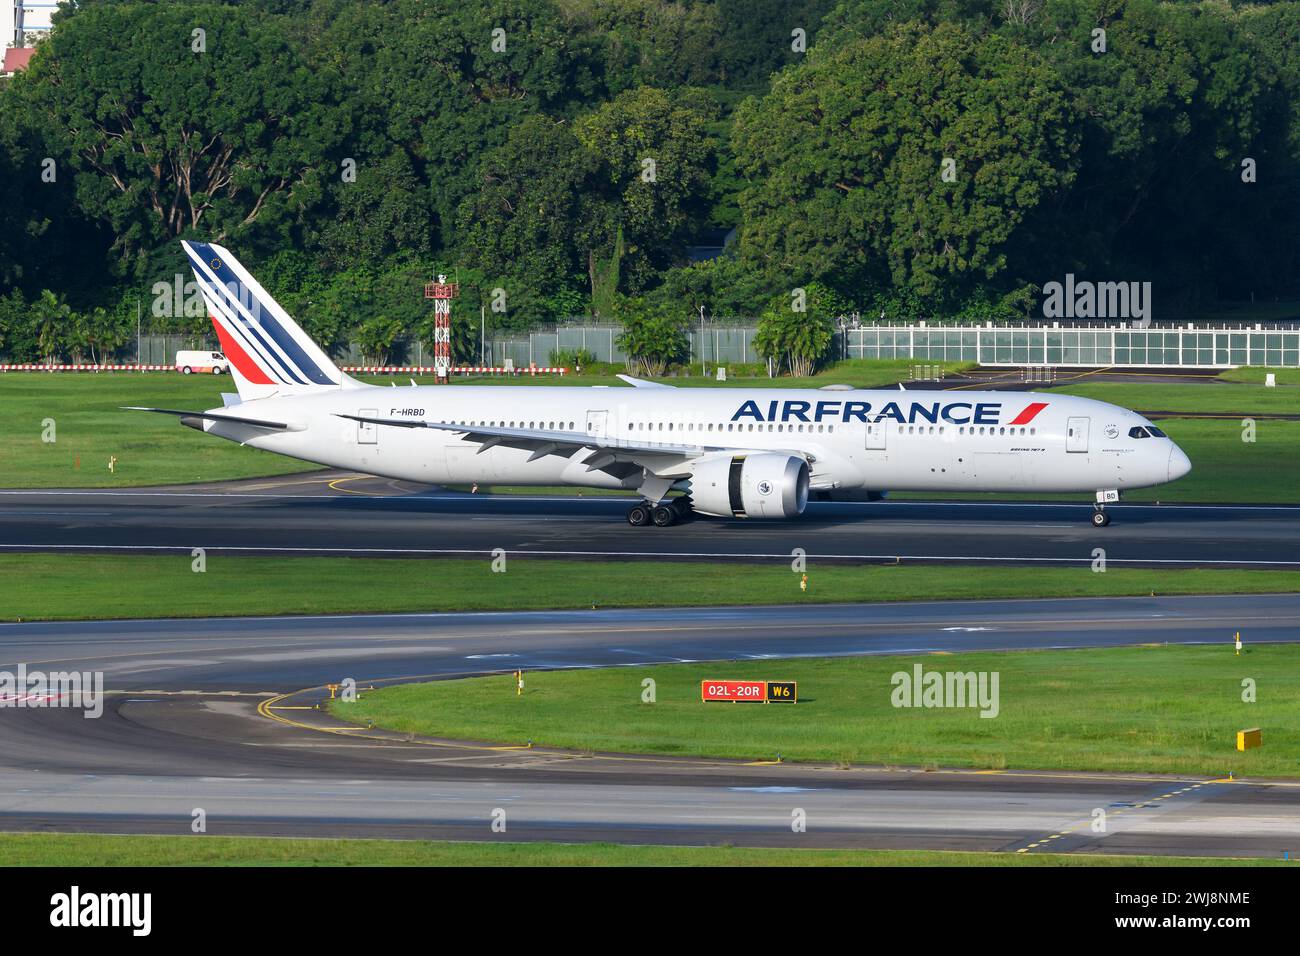 Air France Boeing 787-8 Landung. Flugzeug B787 von der französischen Fluggesellschaft AirFrance kommt an. Das Flugzeug, bekannt als Dreamliner, gehört zur Air France. Stockfoto